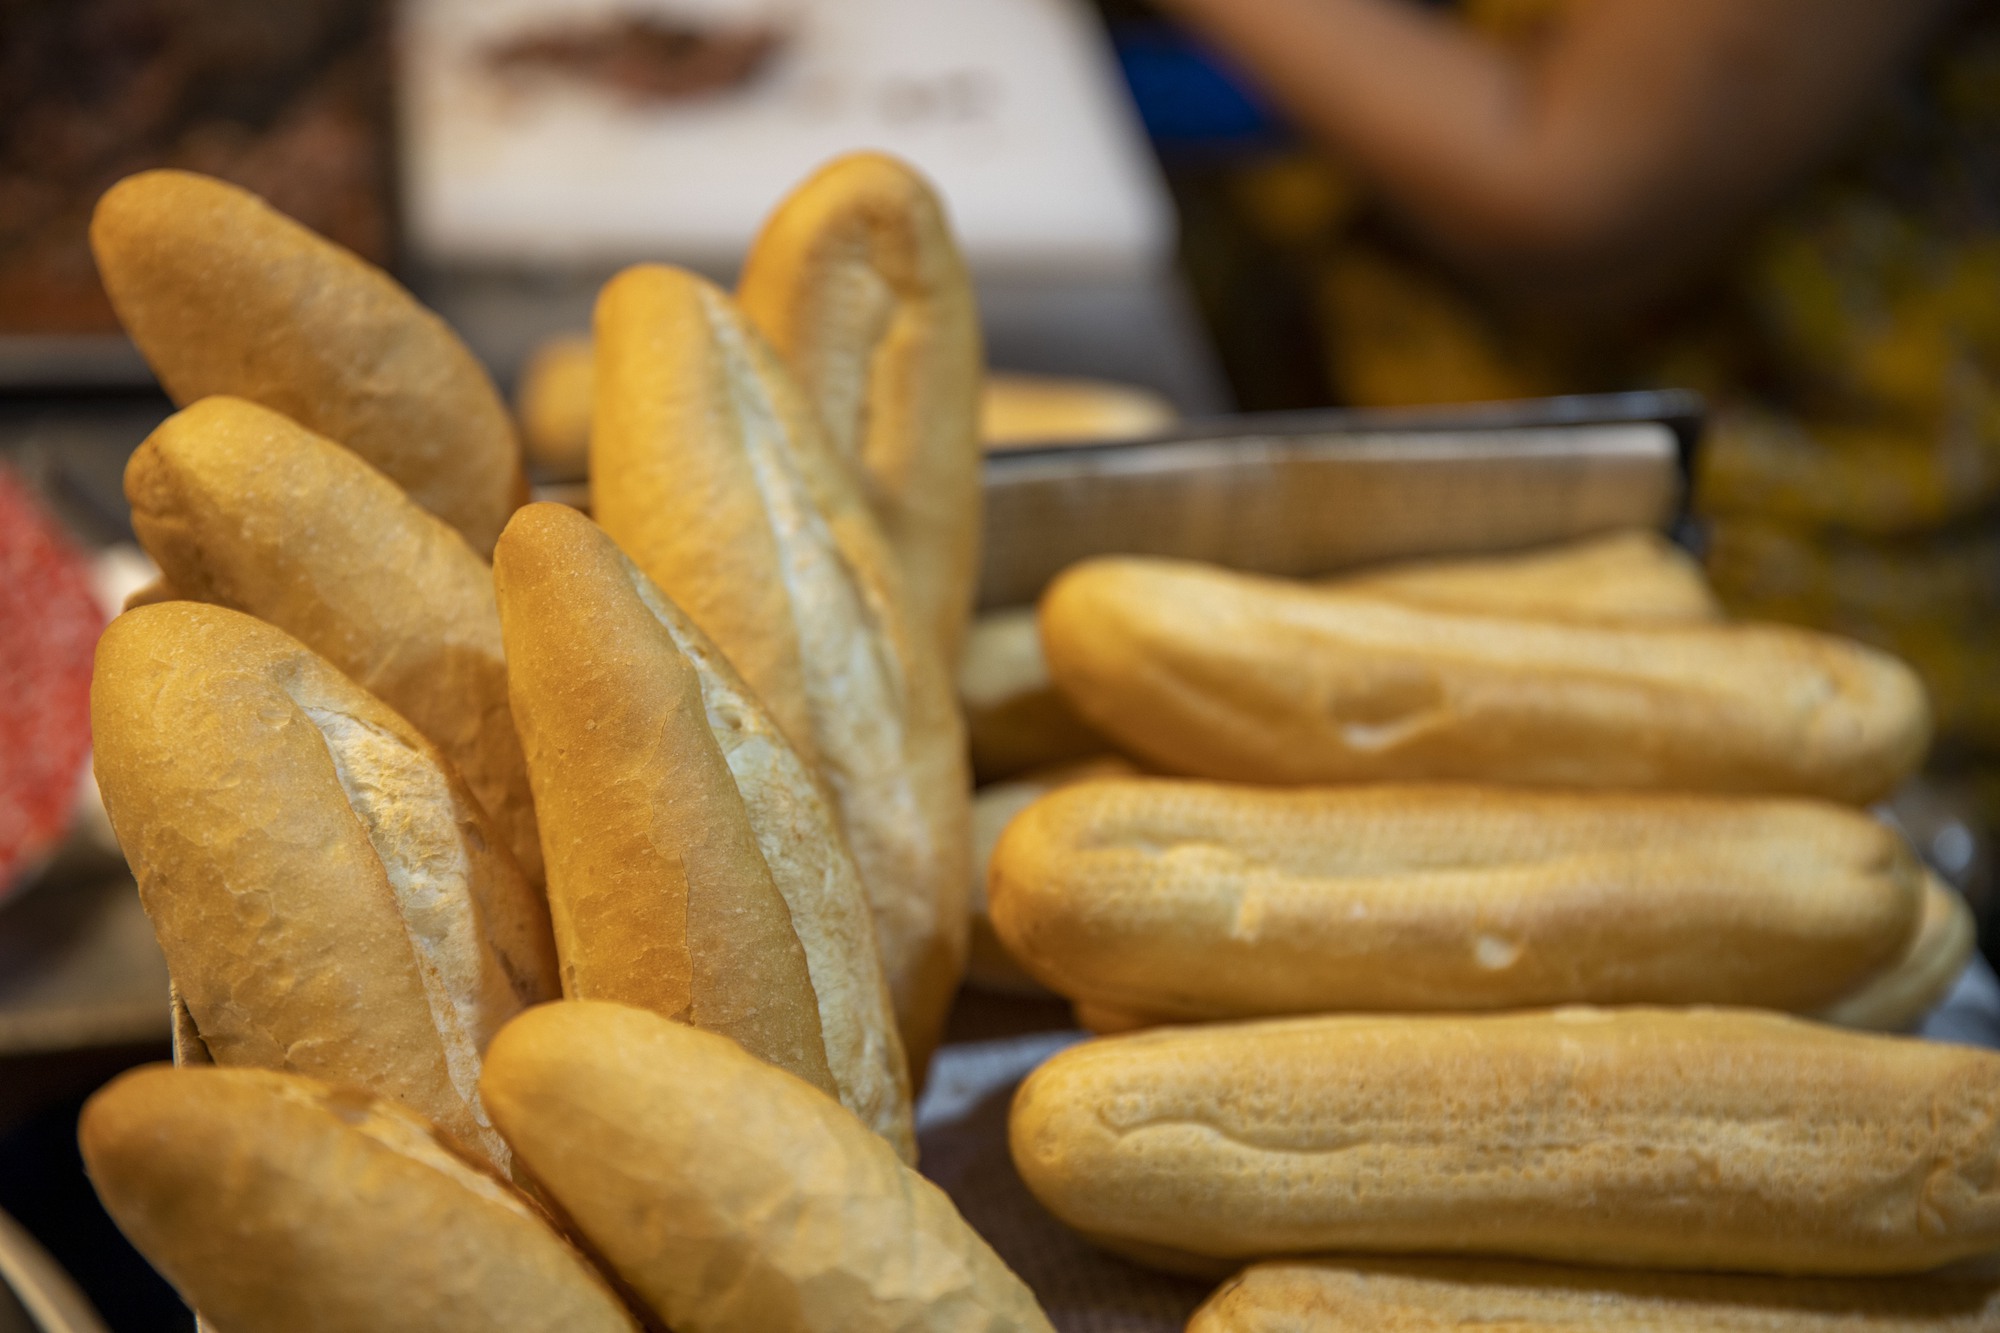 Hàng bánh mì pate “sinh ra” từ ngã tư cột đèn, chẳng có tên chính thức mà hương vị lan tỏa bốn phương - Ảnh 5.